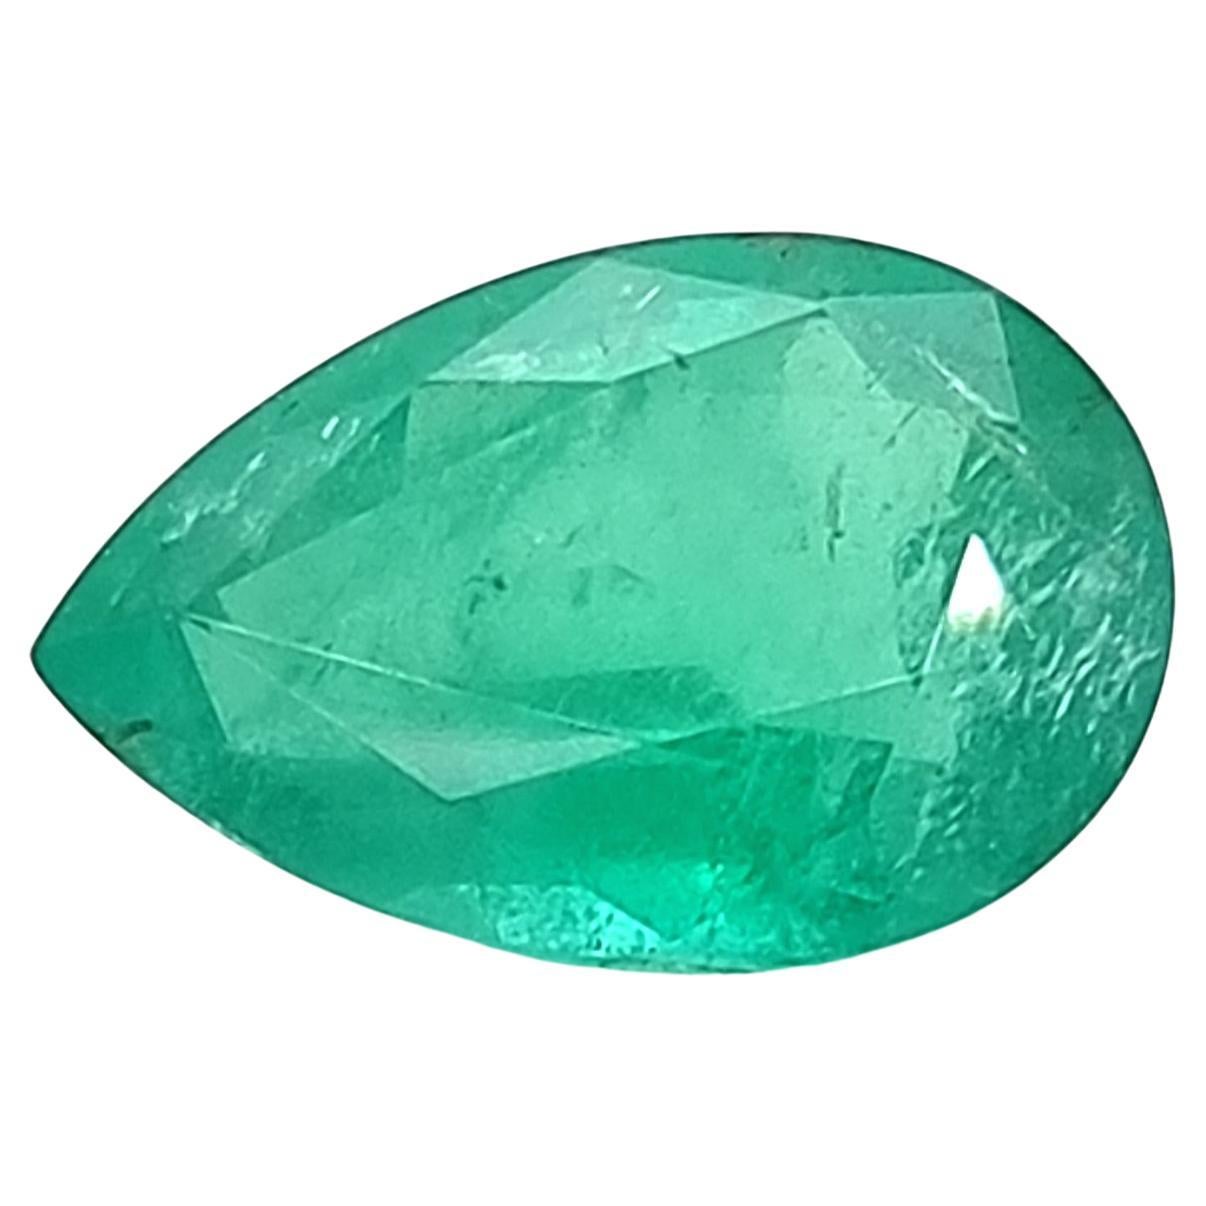 Emerald Pearshape Zambia 10.23 TCW Certified For Sale